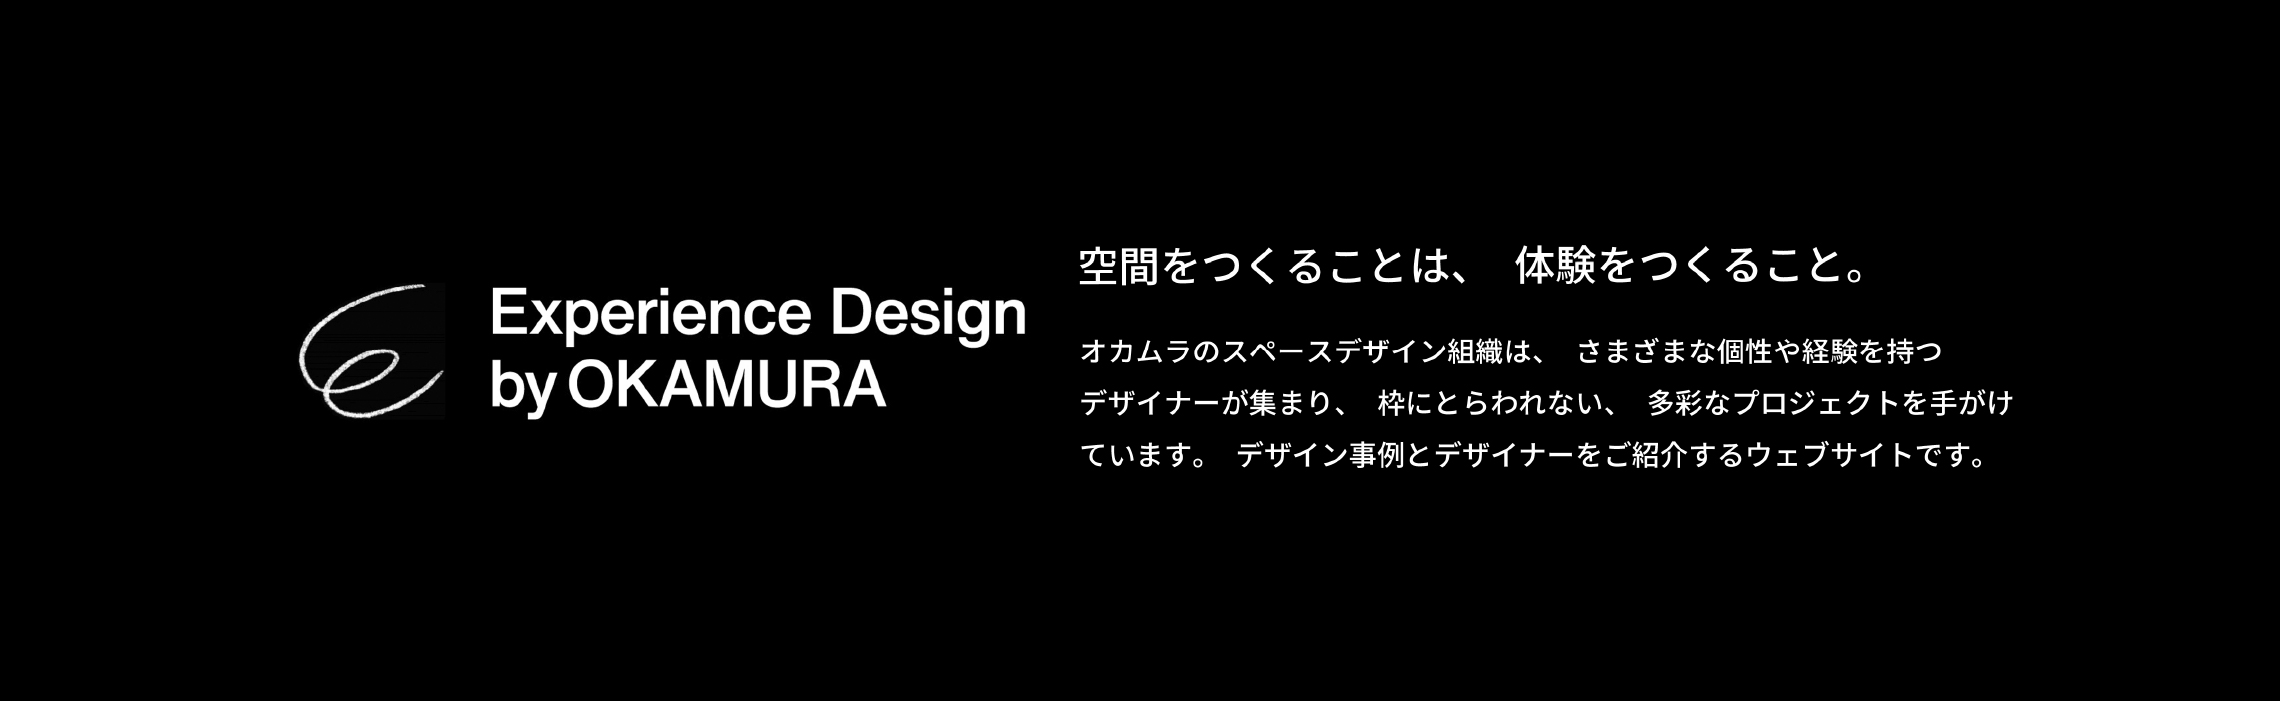 Experience Design by OKAMURA 空間をつくることは、体験をつくること。オカムラのスペースデザイン組織は、さまざまな個性や経験を持つデザイナーが集まり、枠にとらわれない、多彩なプロジェクトを手がけています。